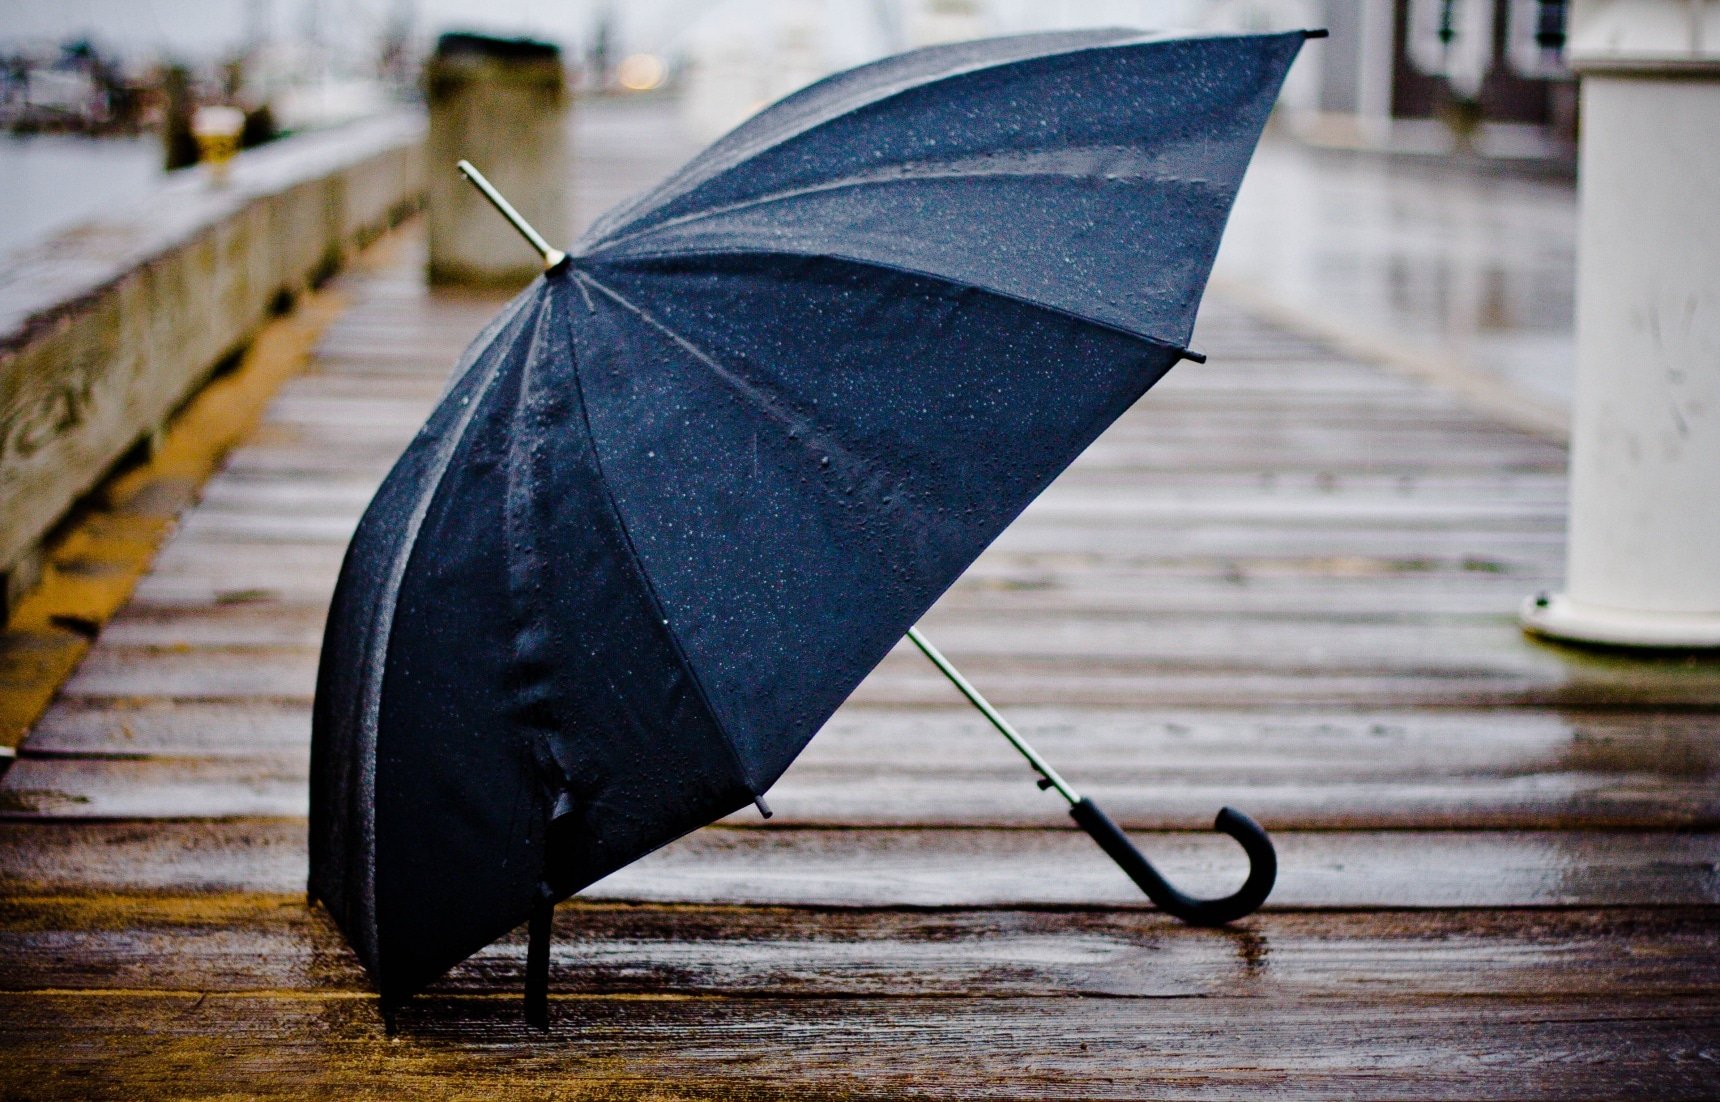 Одолжил ей зонтик. Красивые зонтики. Зонтик под дождем. Дождь зонт. Зонт под дождем.